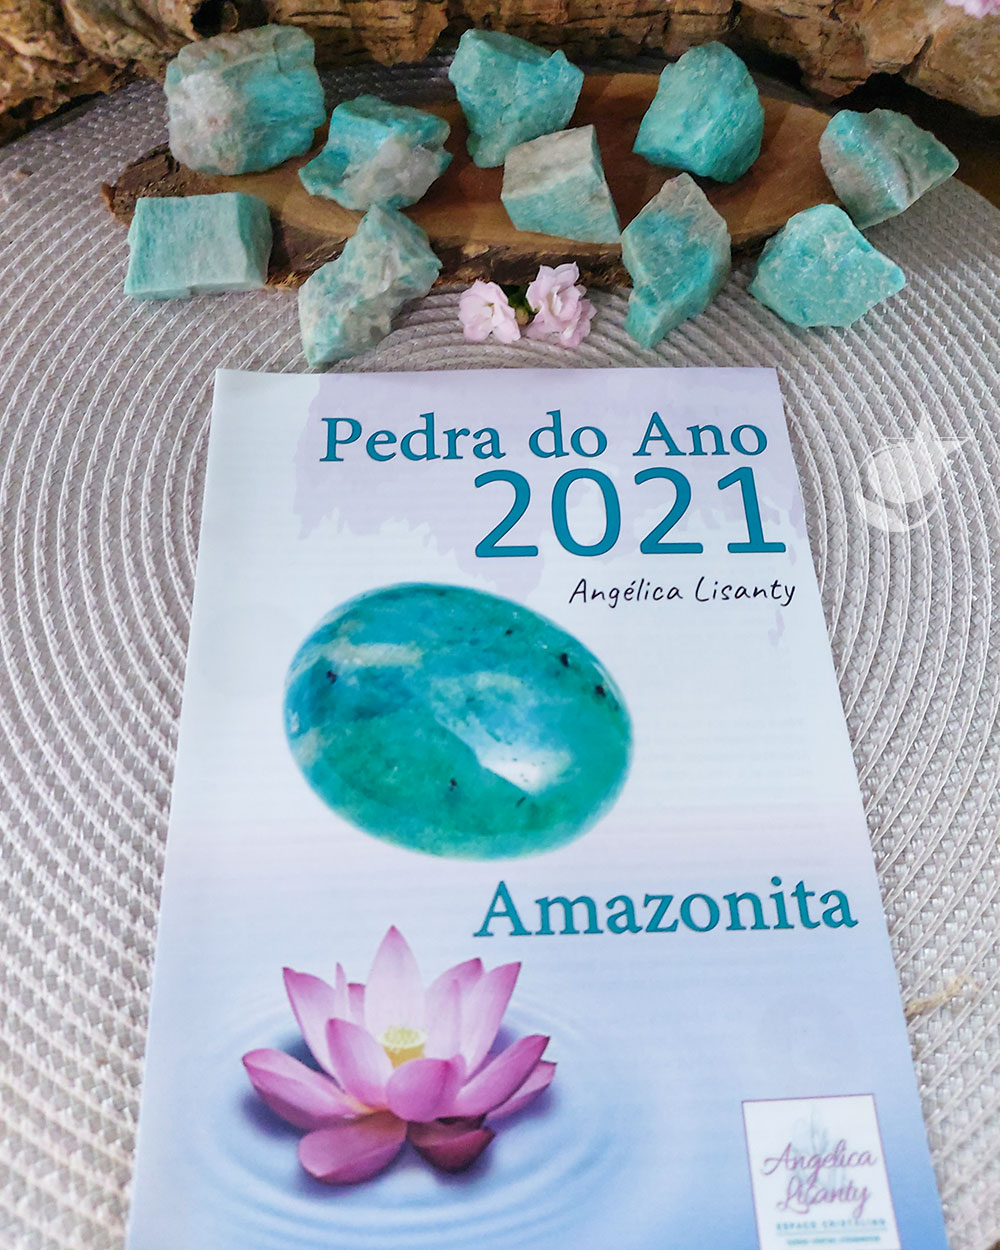 AMAZONITA BRUTA - UNIDADE - 3 a 4 cm - (20 a 30g) - PEDRA DO ANO 2021